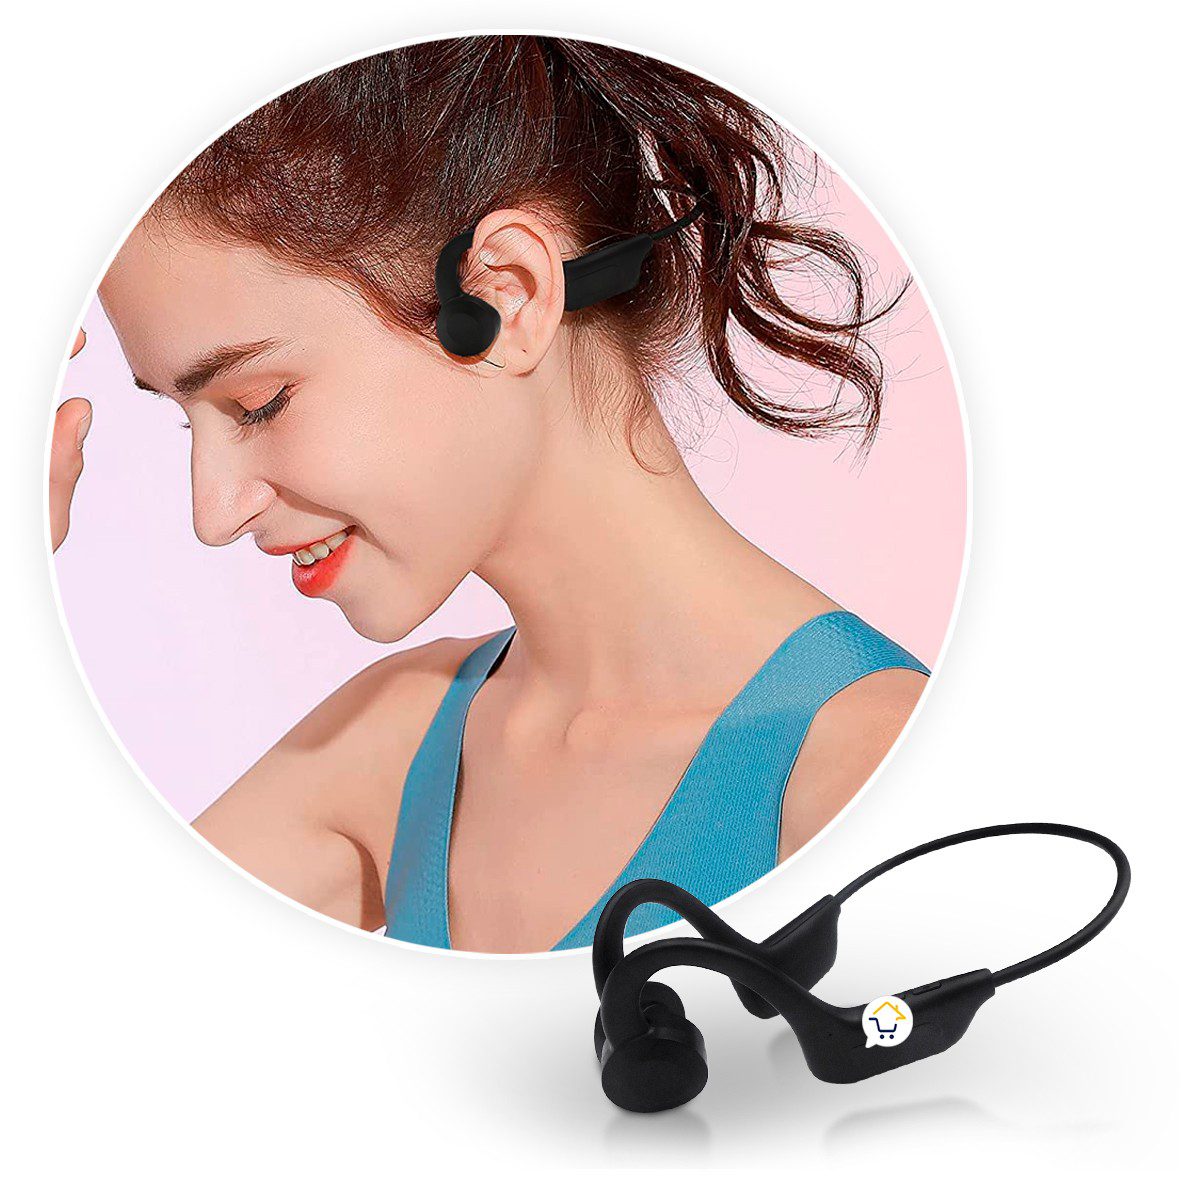 Audífonos Open Ear Inalámbricos Manos Libres Deportivos JS6